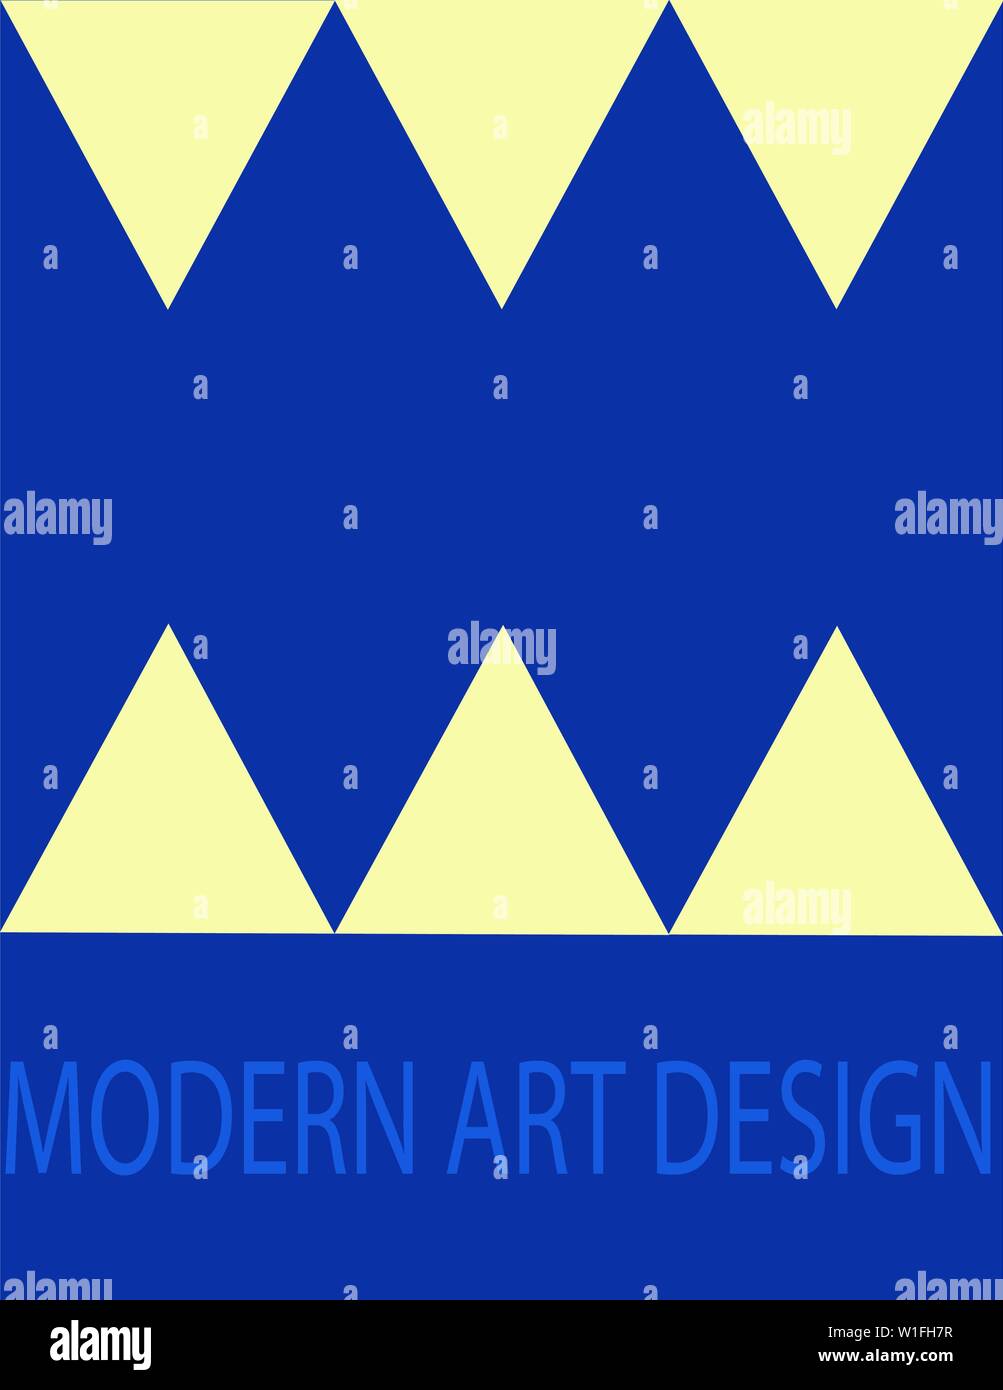 Illustrazione in stile Neo Geo, la progettazione di Memphis combina la giocosità e la semplicità degli elementi, triangoli gialli Illustrazione Vettoriale